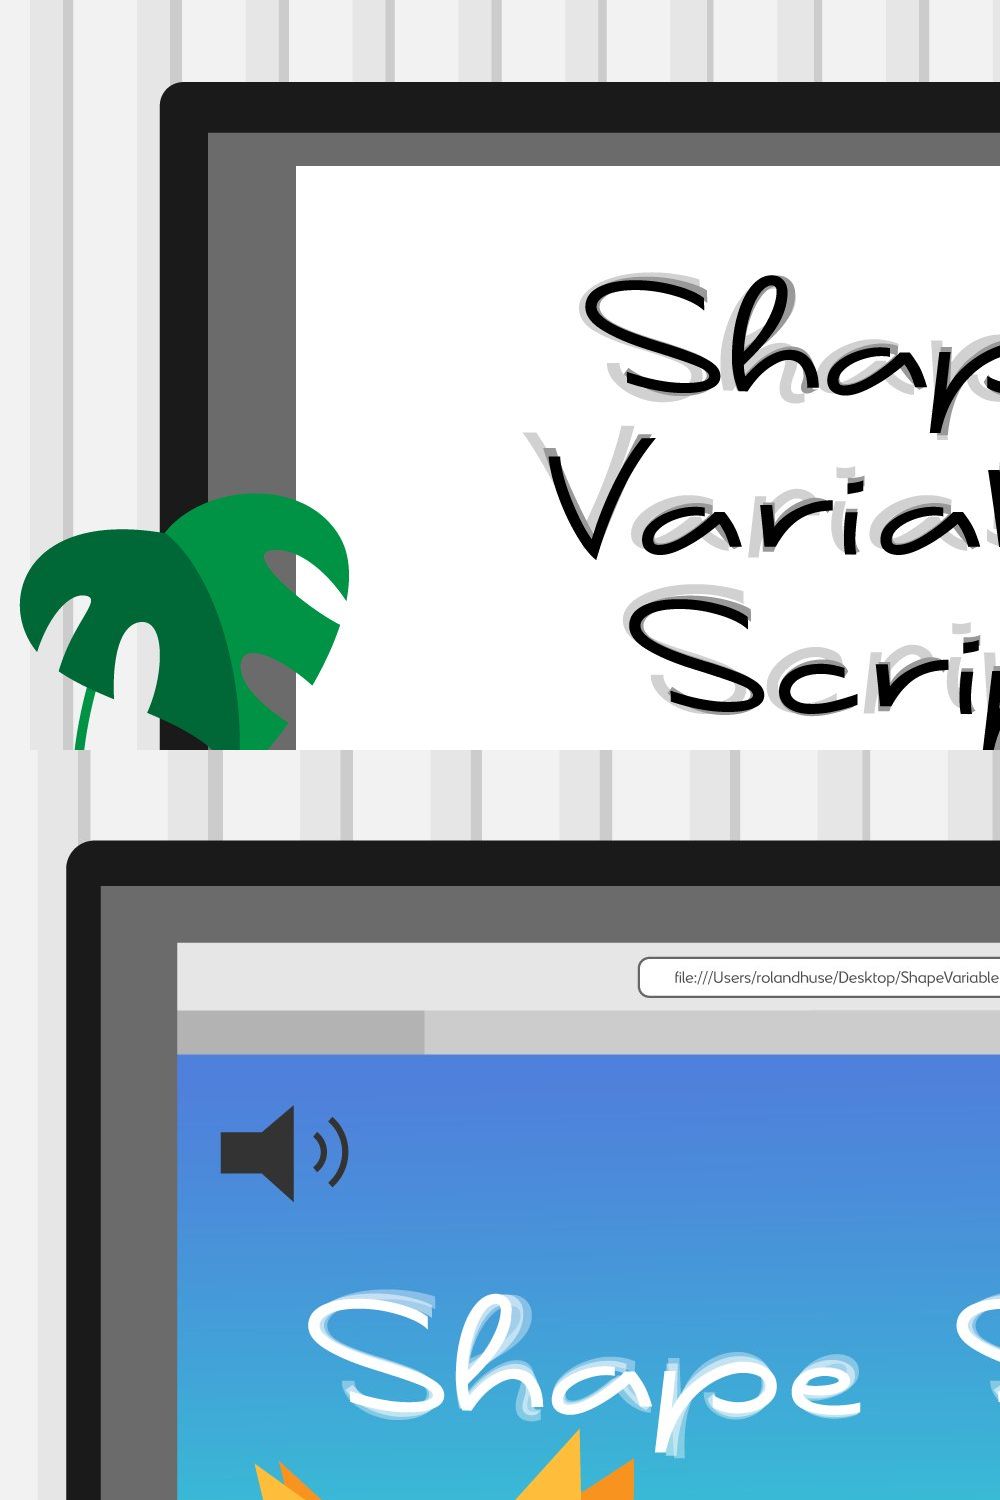 Shape Variable Script pinterest preview image.